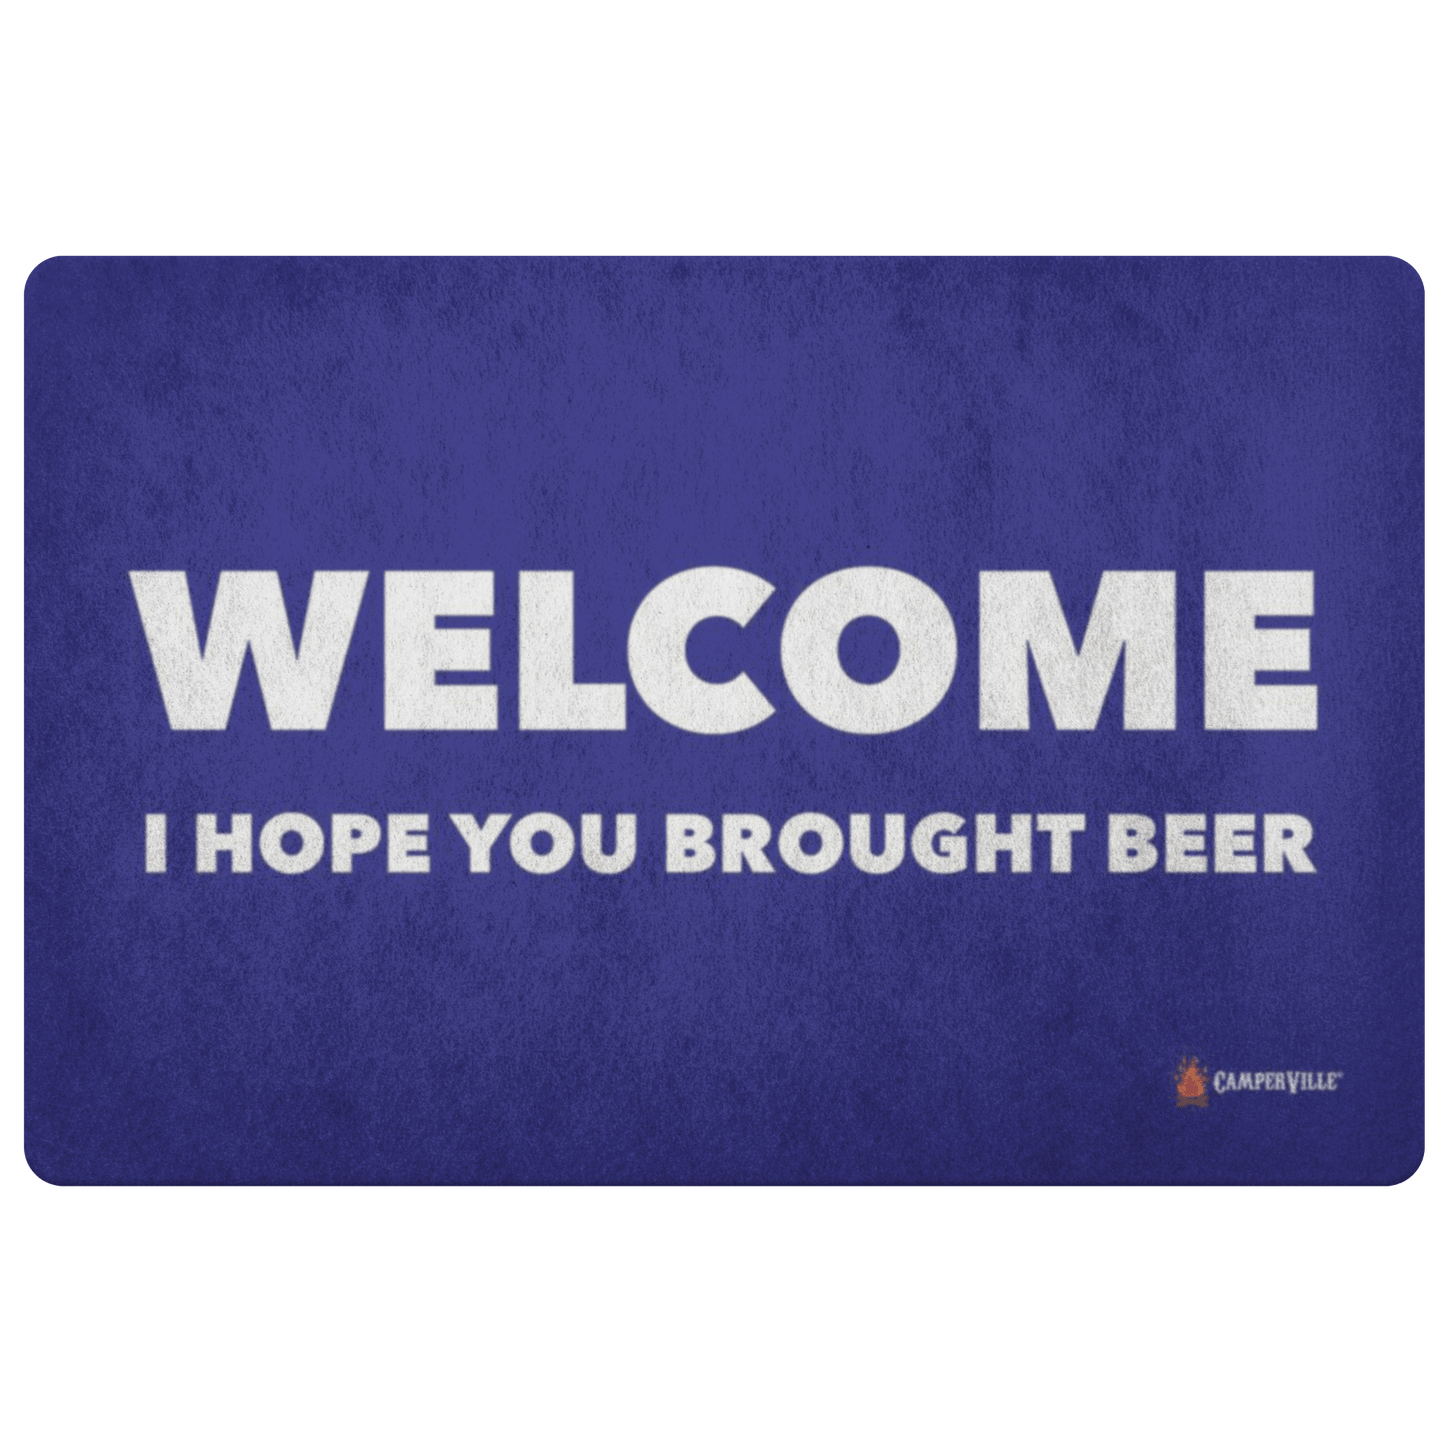 "Welcome - I Hope You Brought Beer" Doormat